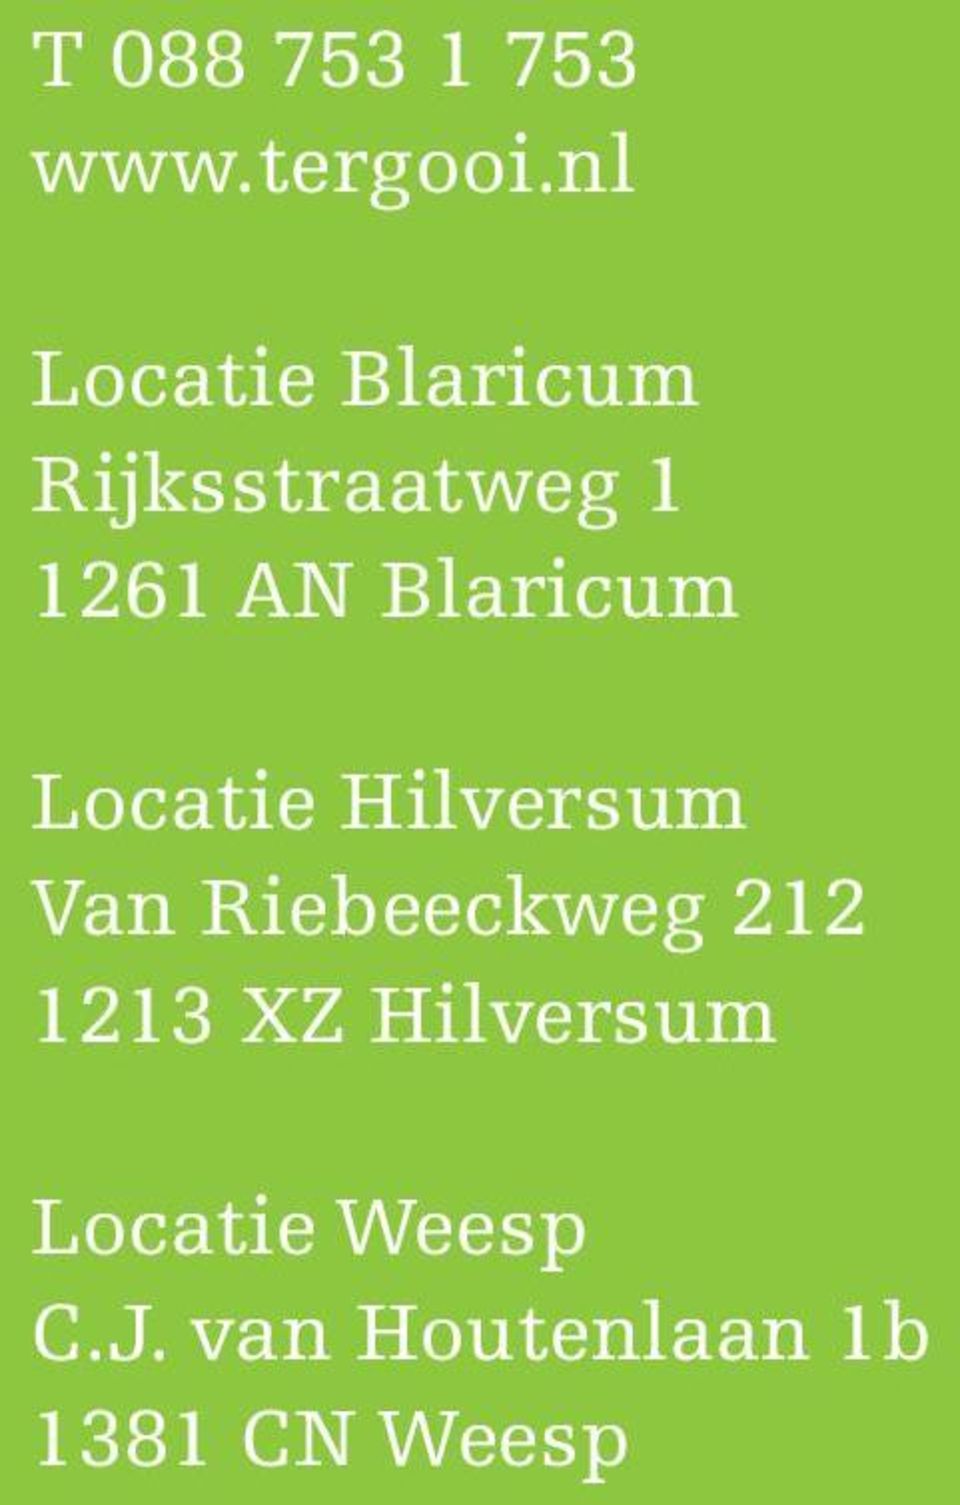 Blaricum Locatie Hilversum Van Riebeeckweg 212